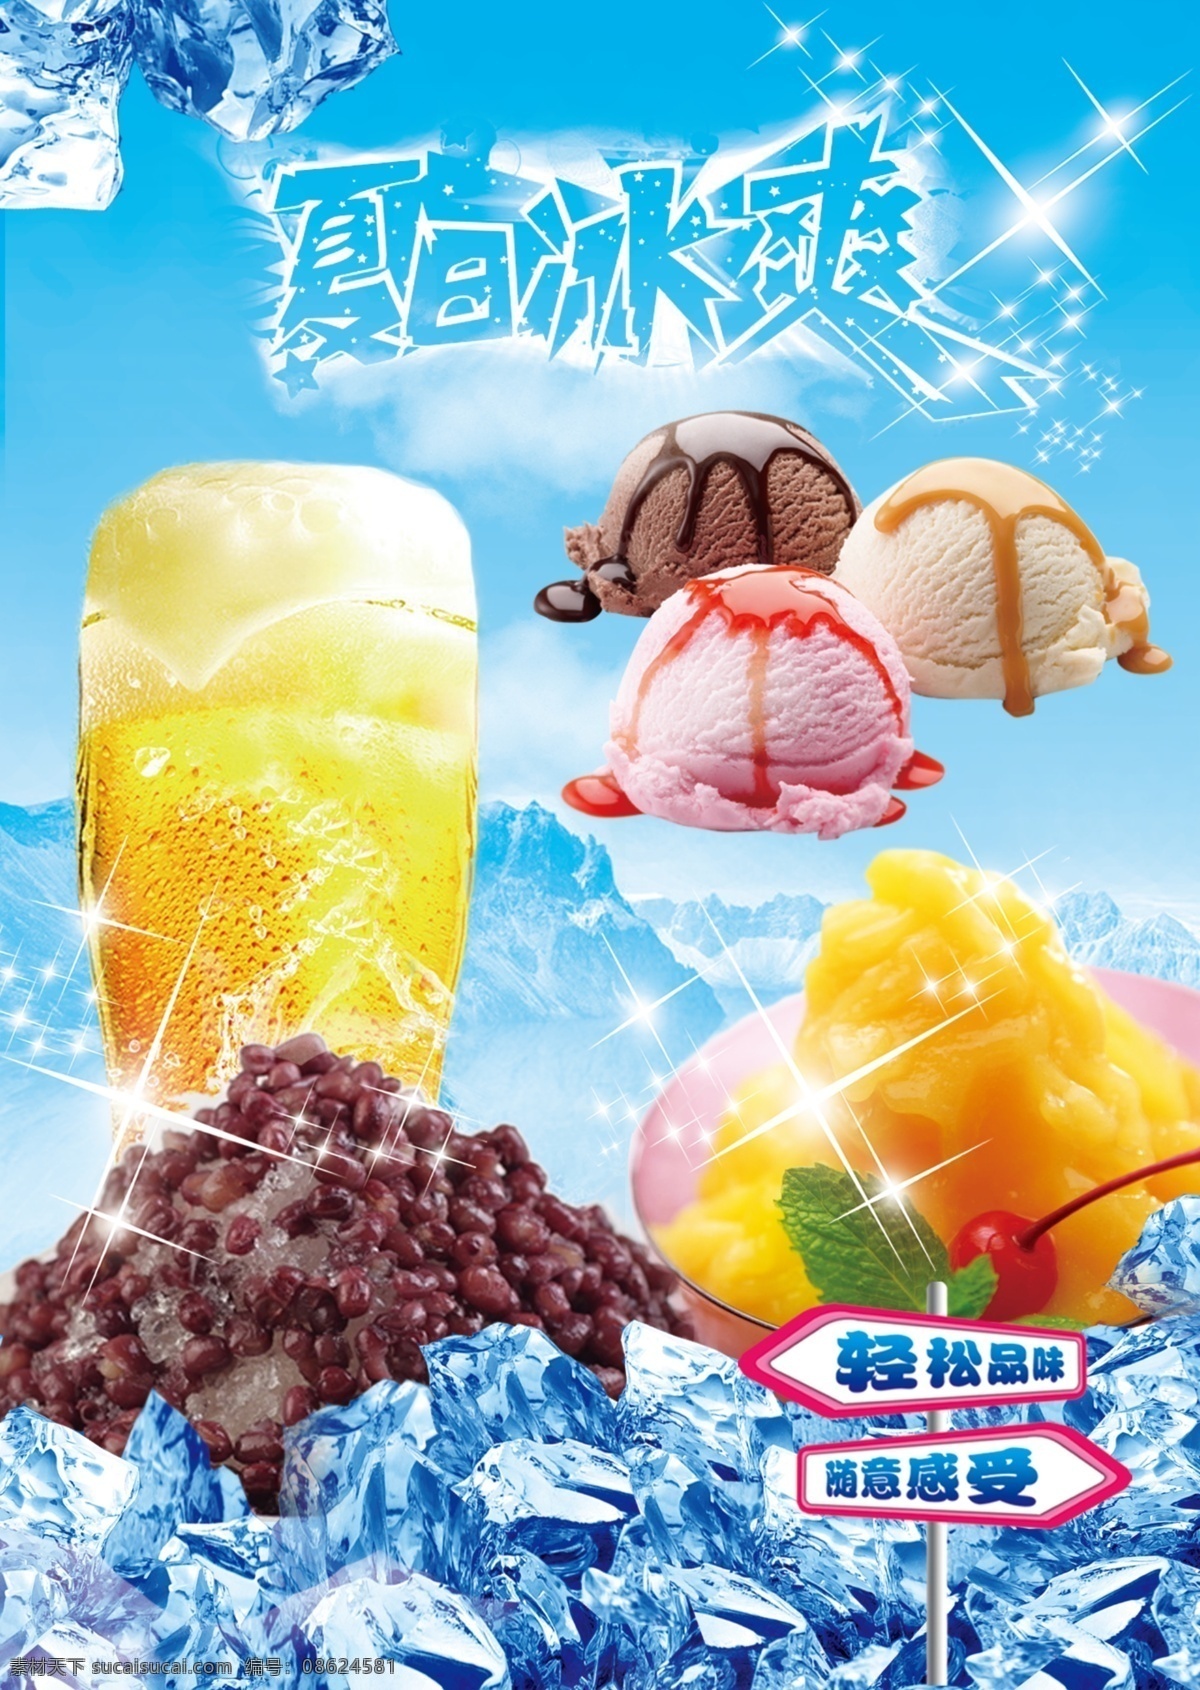 夏日冰爽 刨冰 啤酒 冰淇淋 冰块 夏日 广告设计模板 源文件